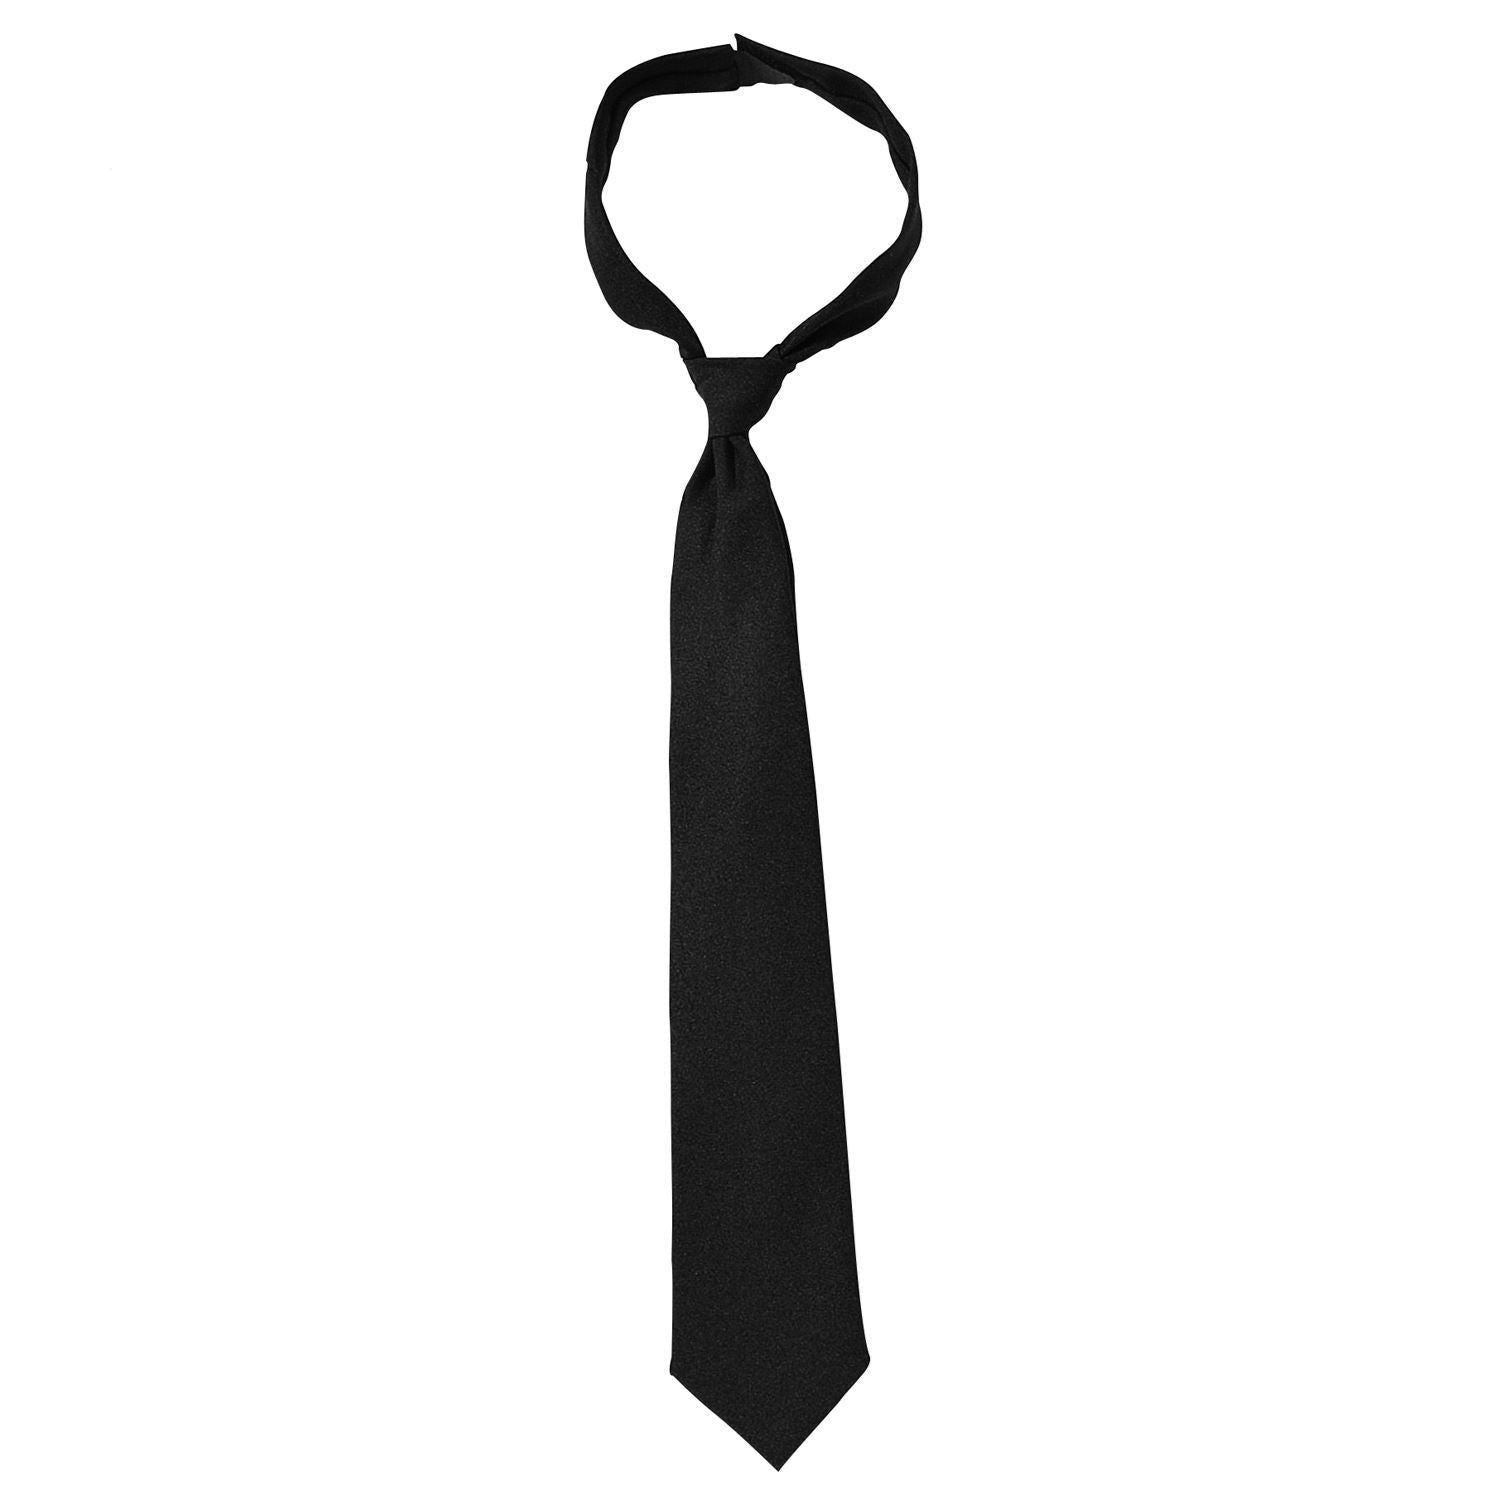 Hook n' Loop Necktie -Black 20